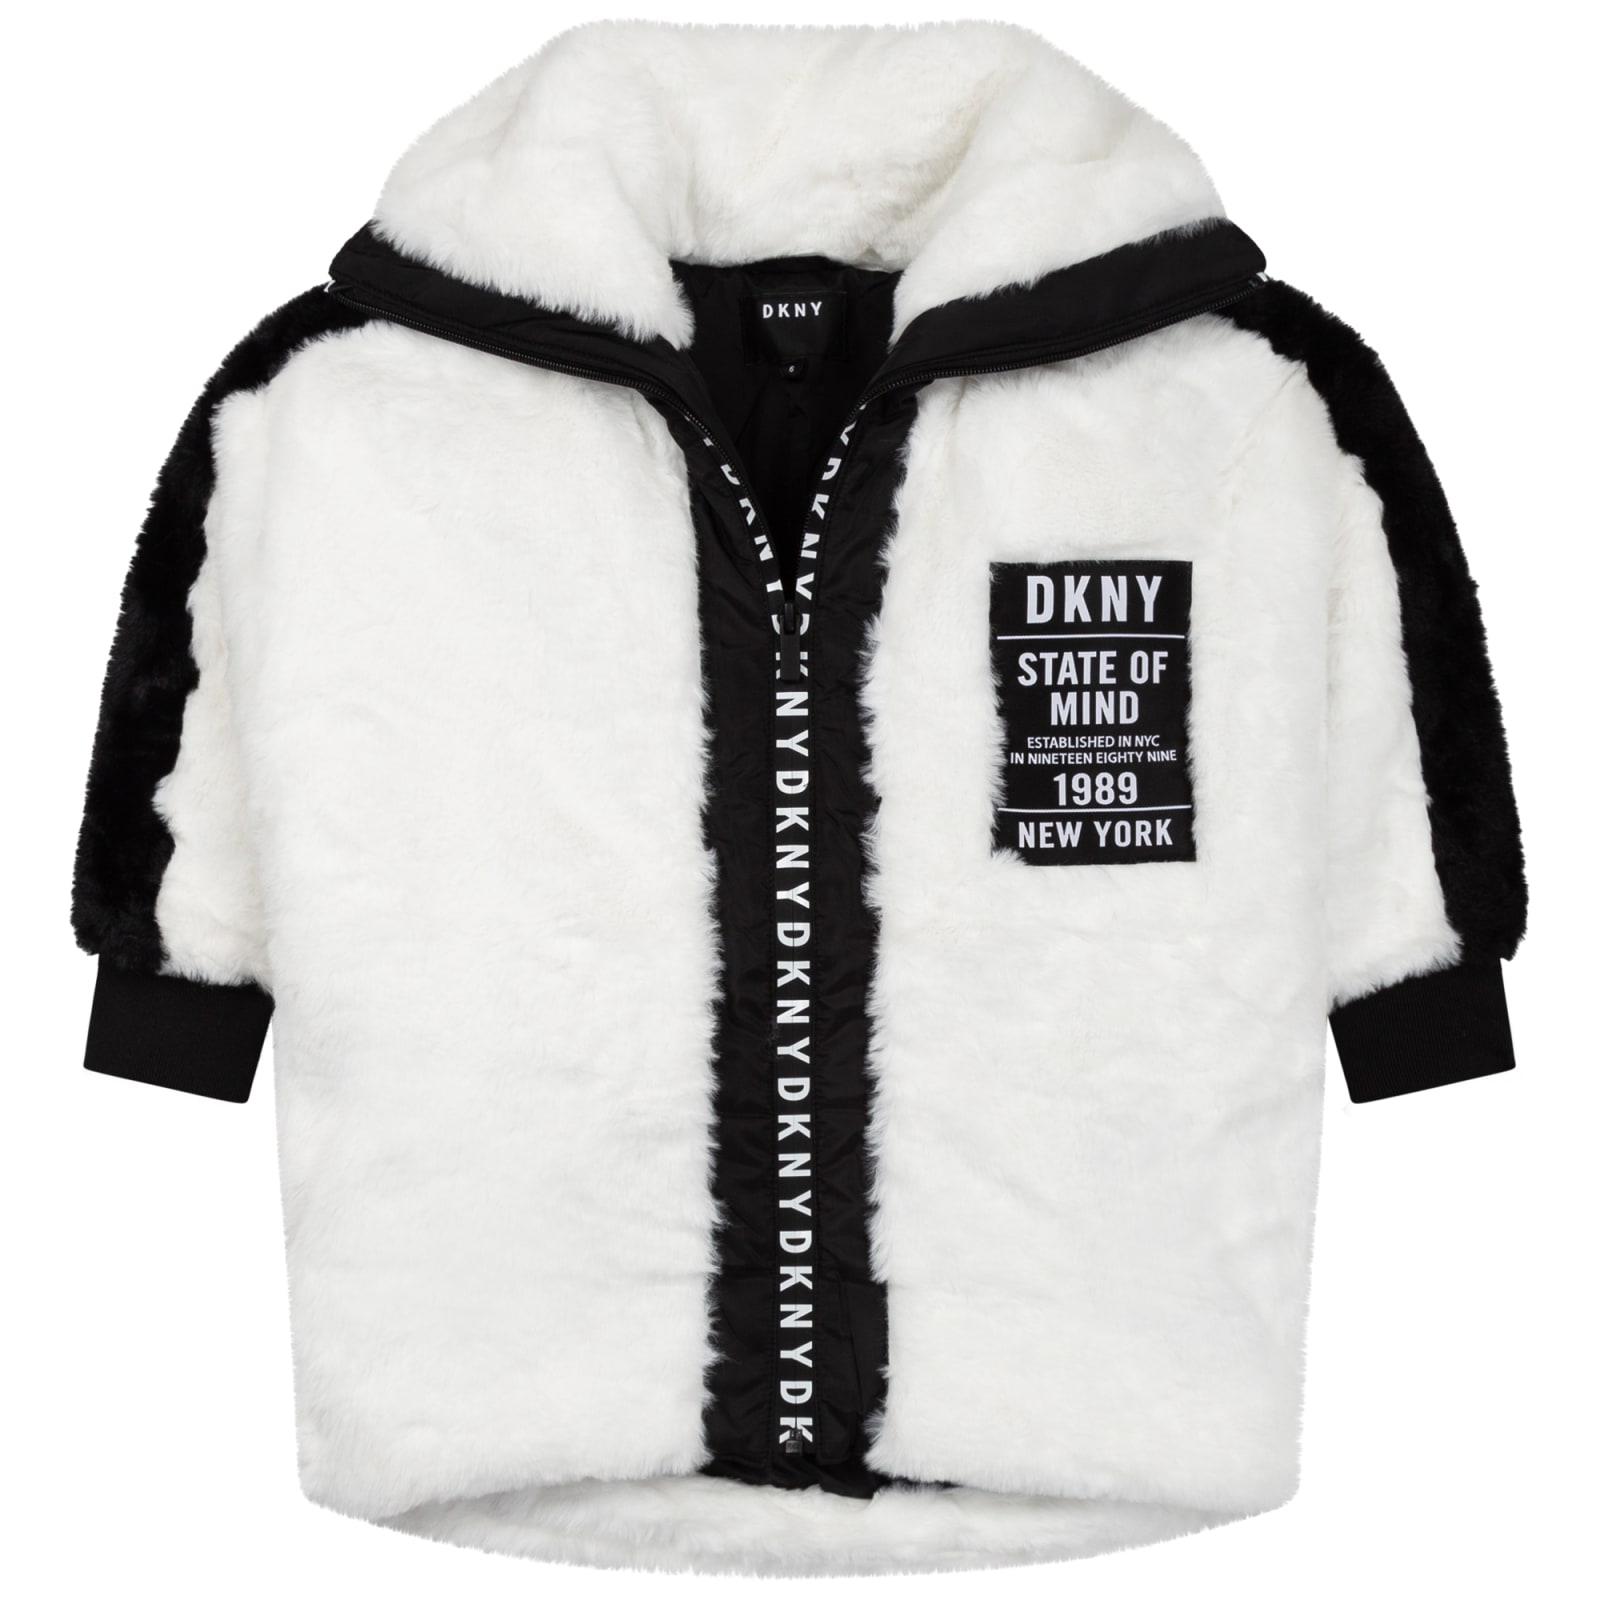 DKNY Coat With Print